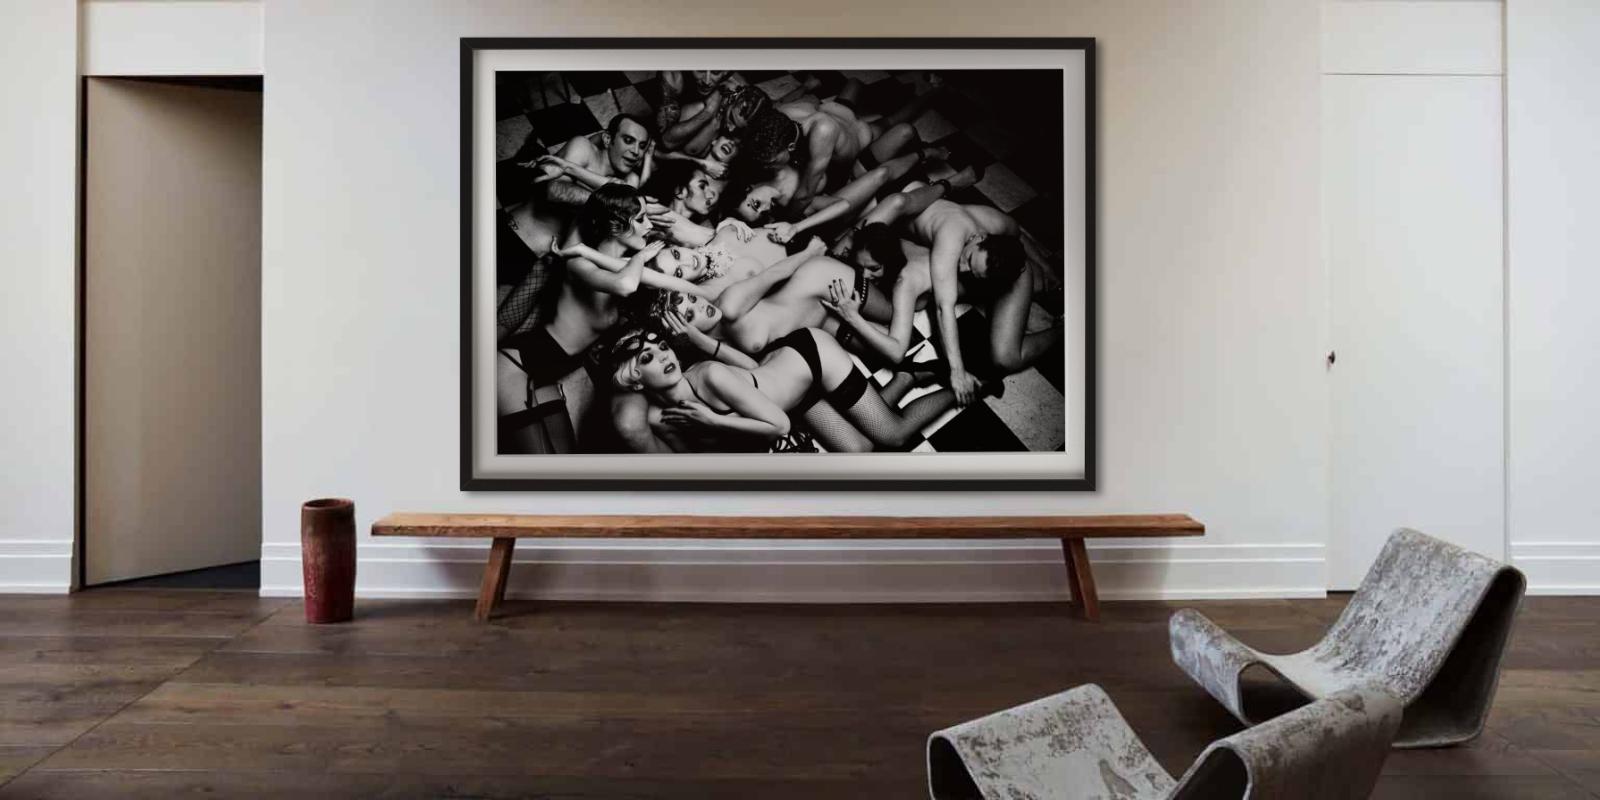 Das Erwachen, aus der Geschichte von Olga – Kunstfotografie, 2011 (Schwarz), Black and White Photograph, von Ellen von Unwerth